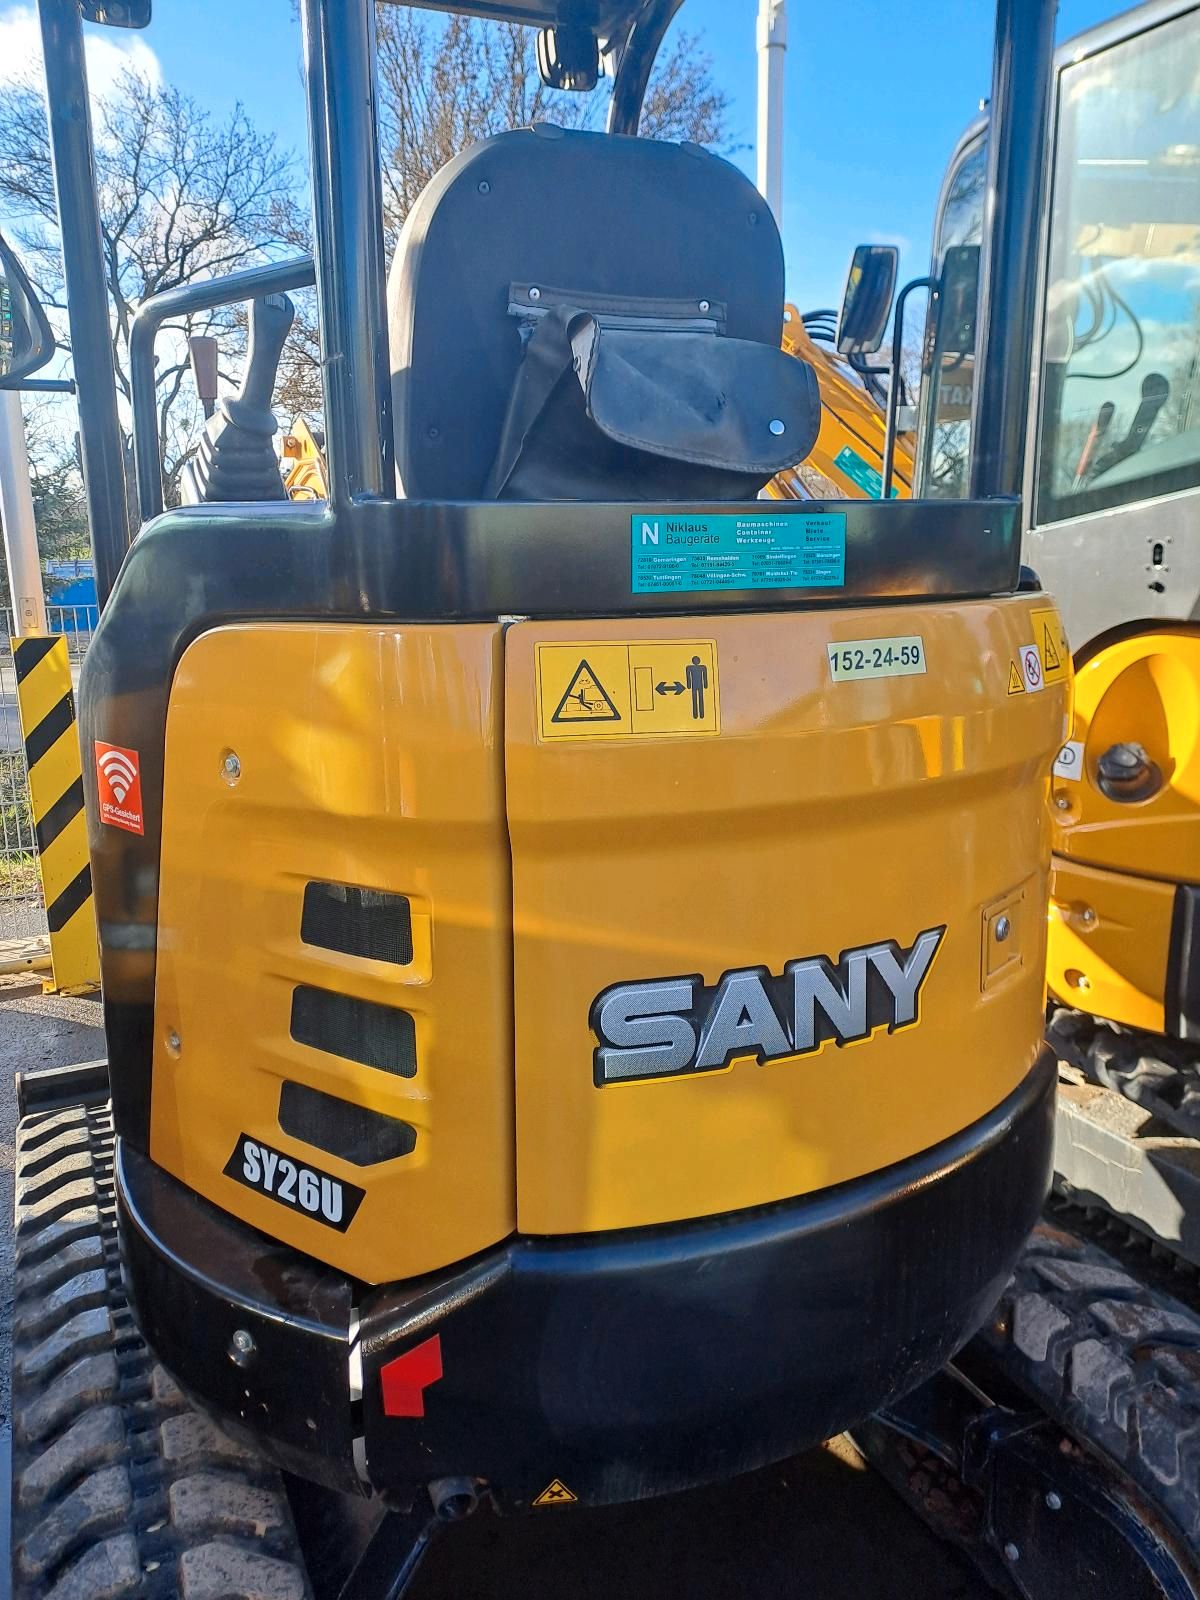 SANY SY 26U gebraucht kaufen / Minibagger bei Niklaus Baugeräte kaufen